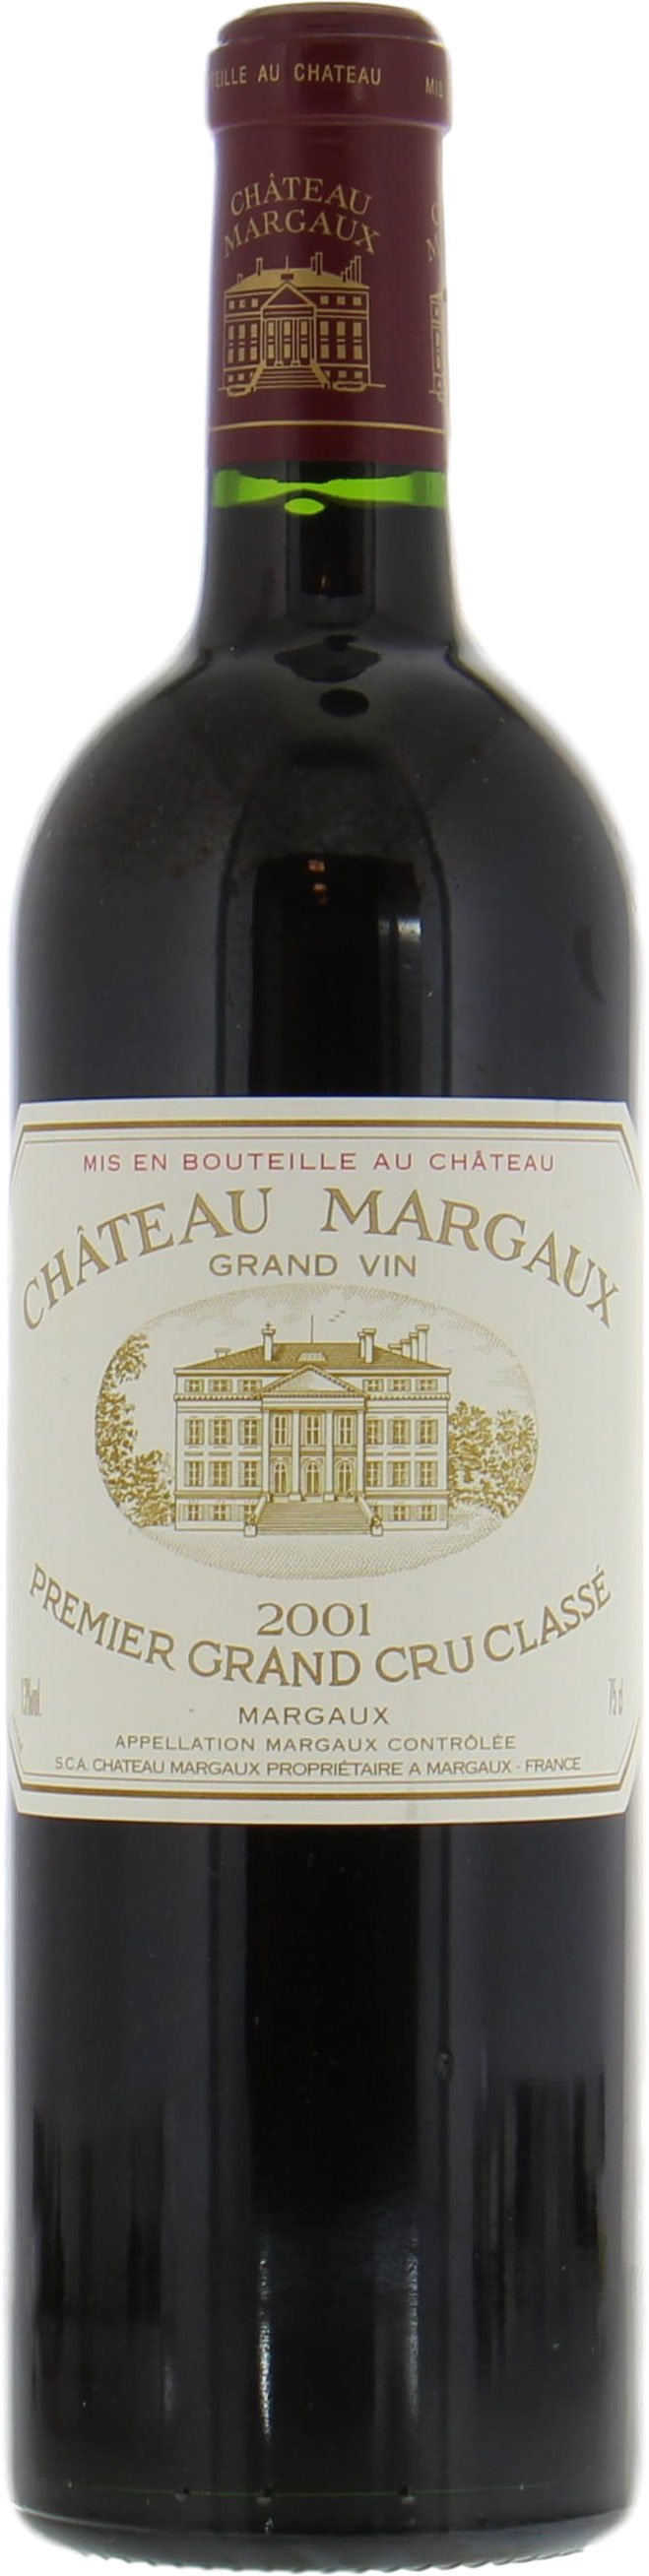 Chateau Margaux - Chateau Margaux 2001